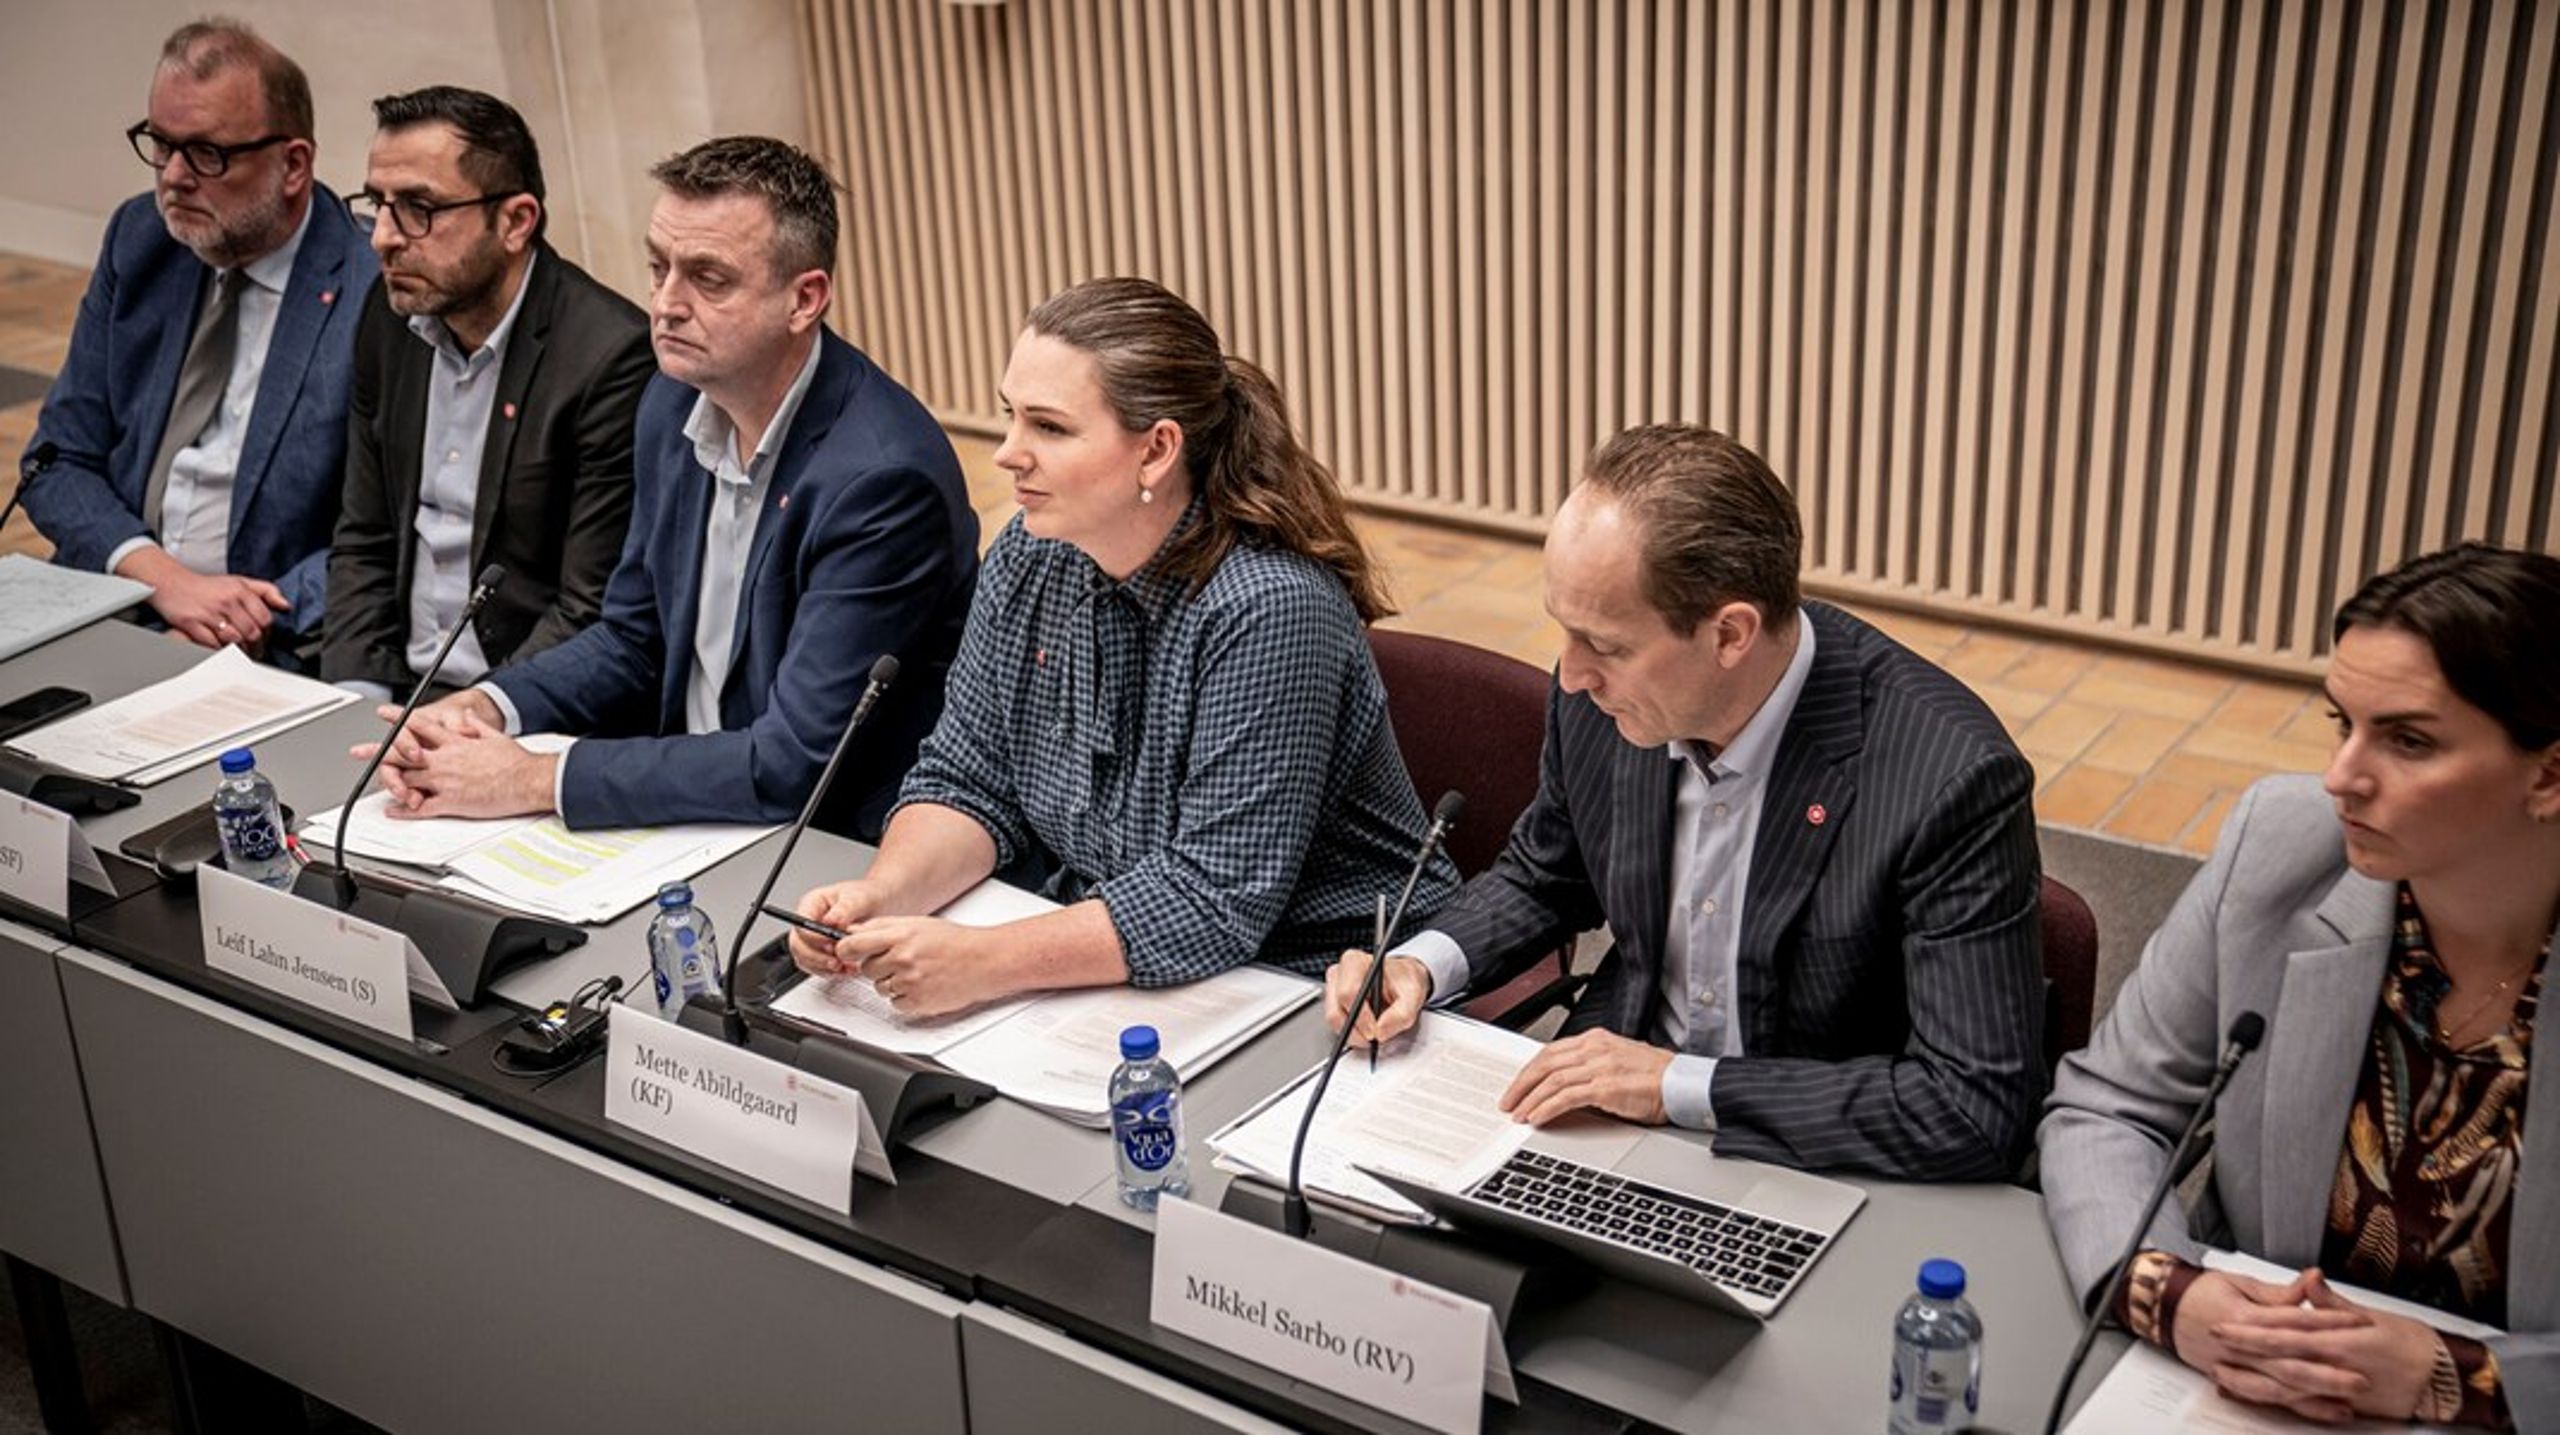 De seks udpegede statsrevisorer er Lars Christian Lilleholt (V), Serdal Benli (SF), Leif Lahn Jensen (S), Mette Abildgaard (K), Mikkel Irminger Sarbo (R) og Monika Rubin (M).